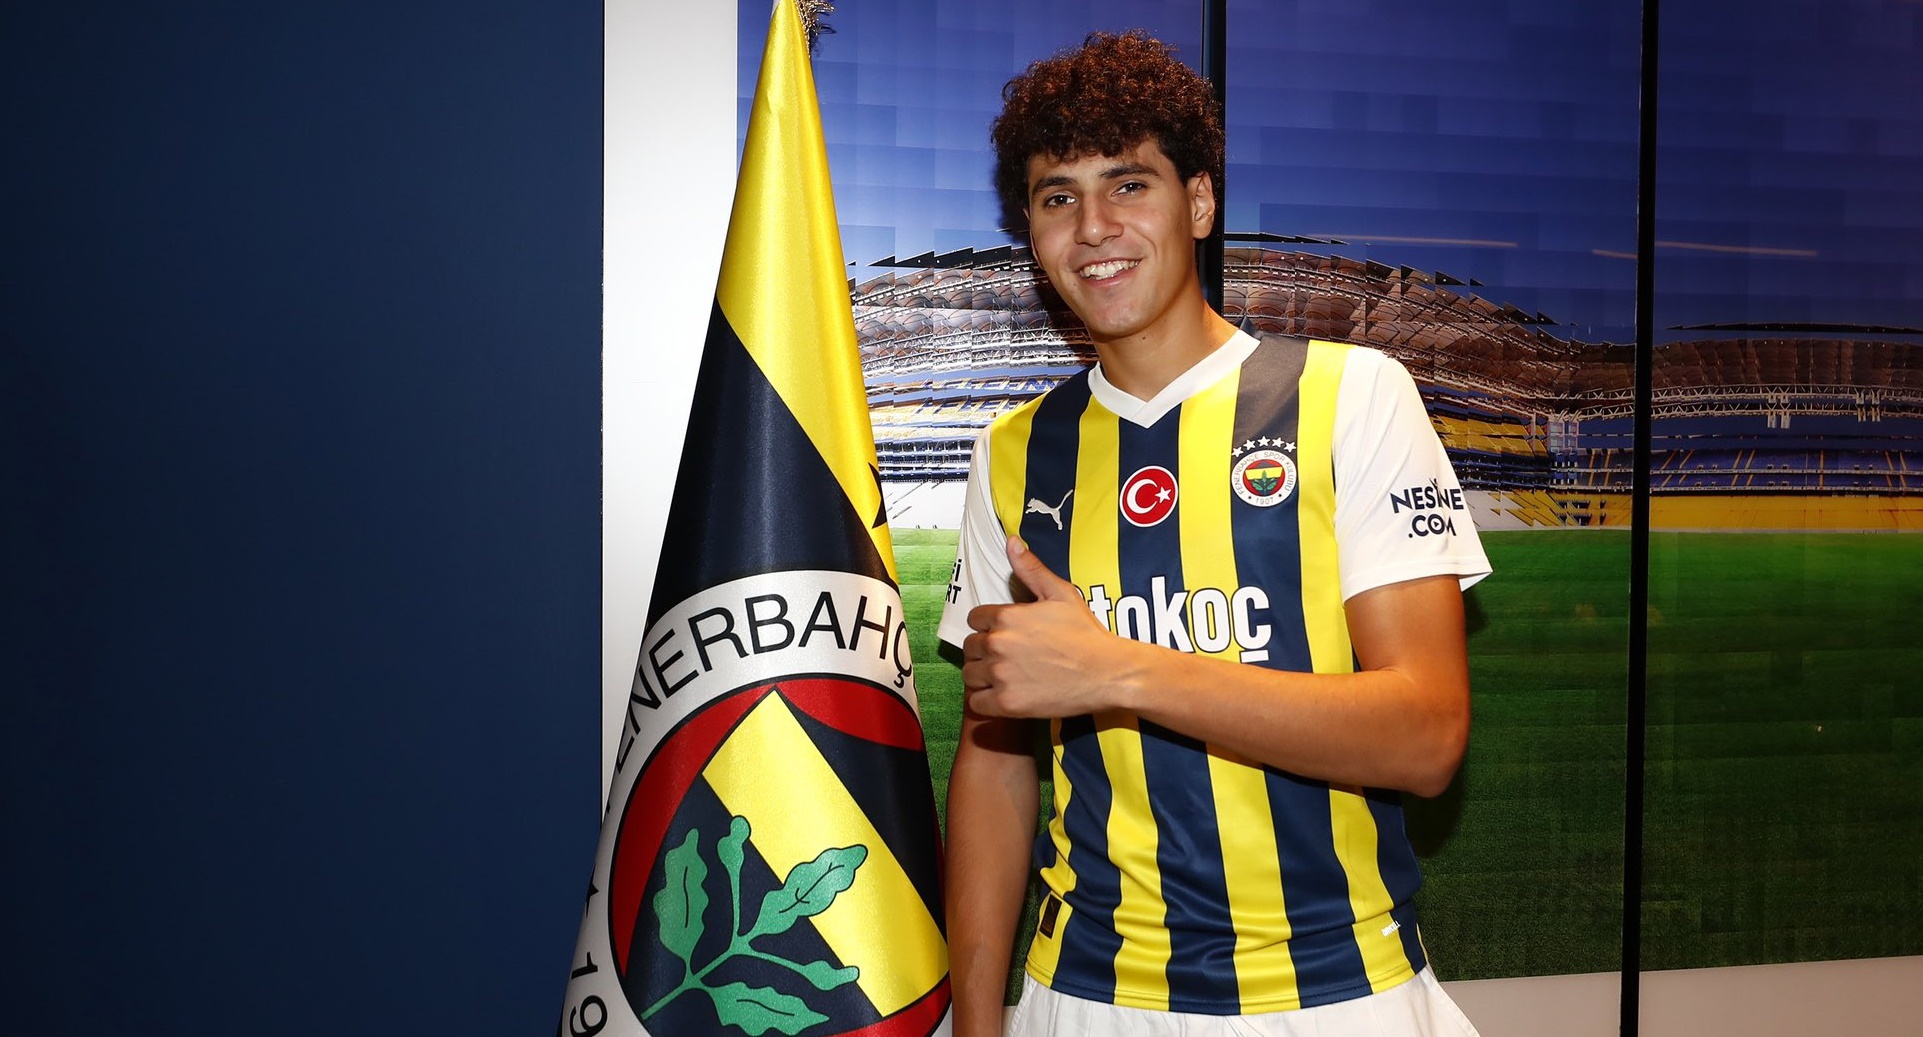 Fenerbahçe den sürpriz transfer! Omar Fayed ile 4 yıllık sözleşme imzalandı